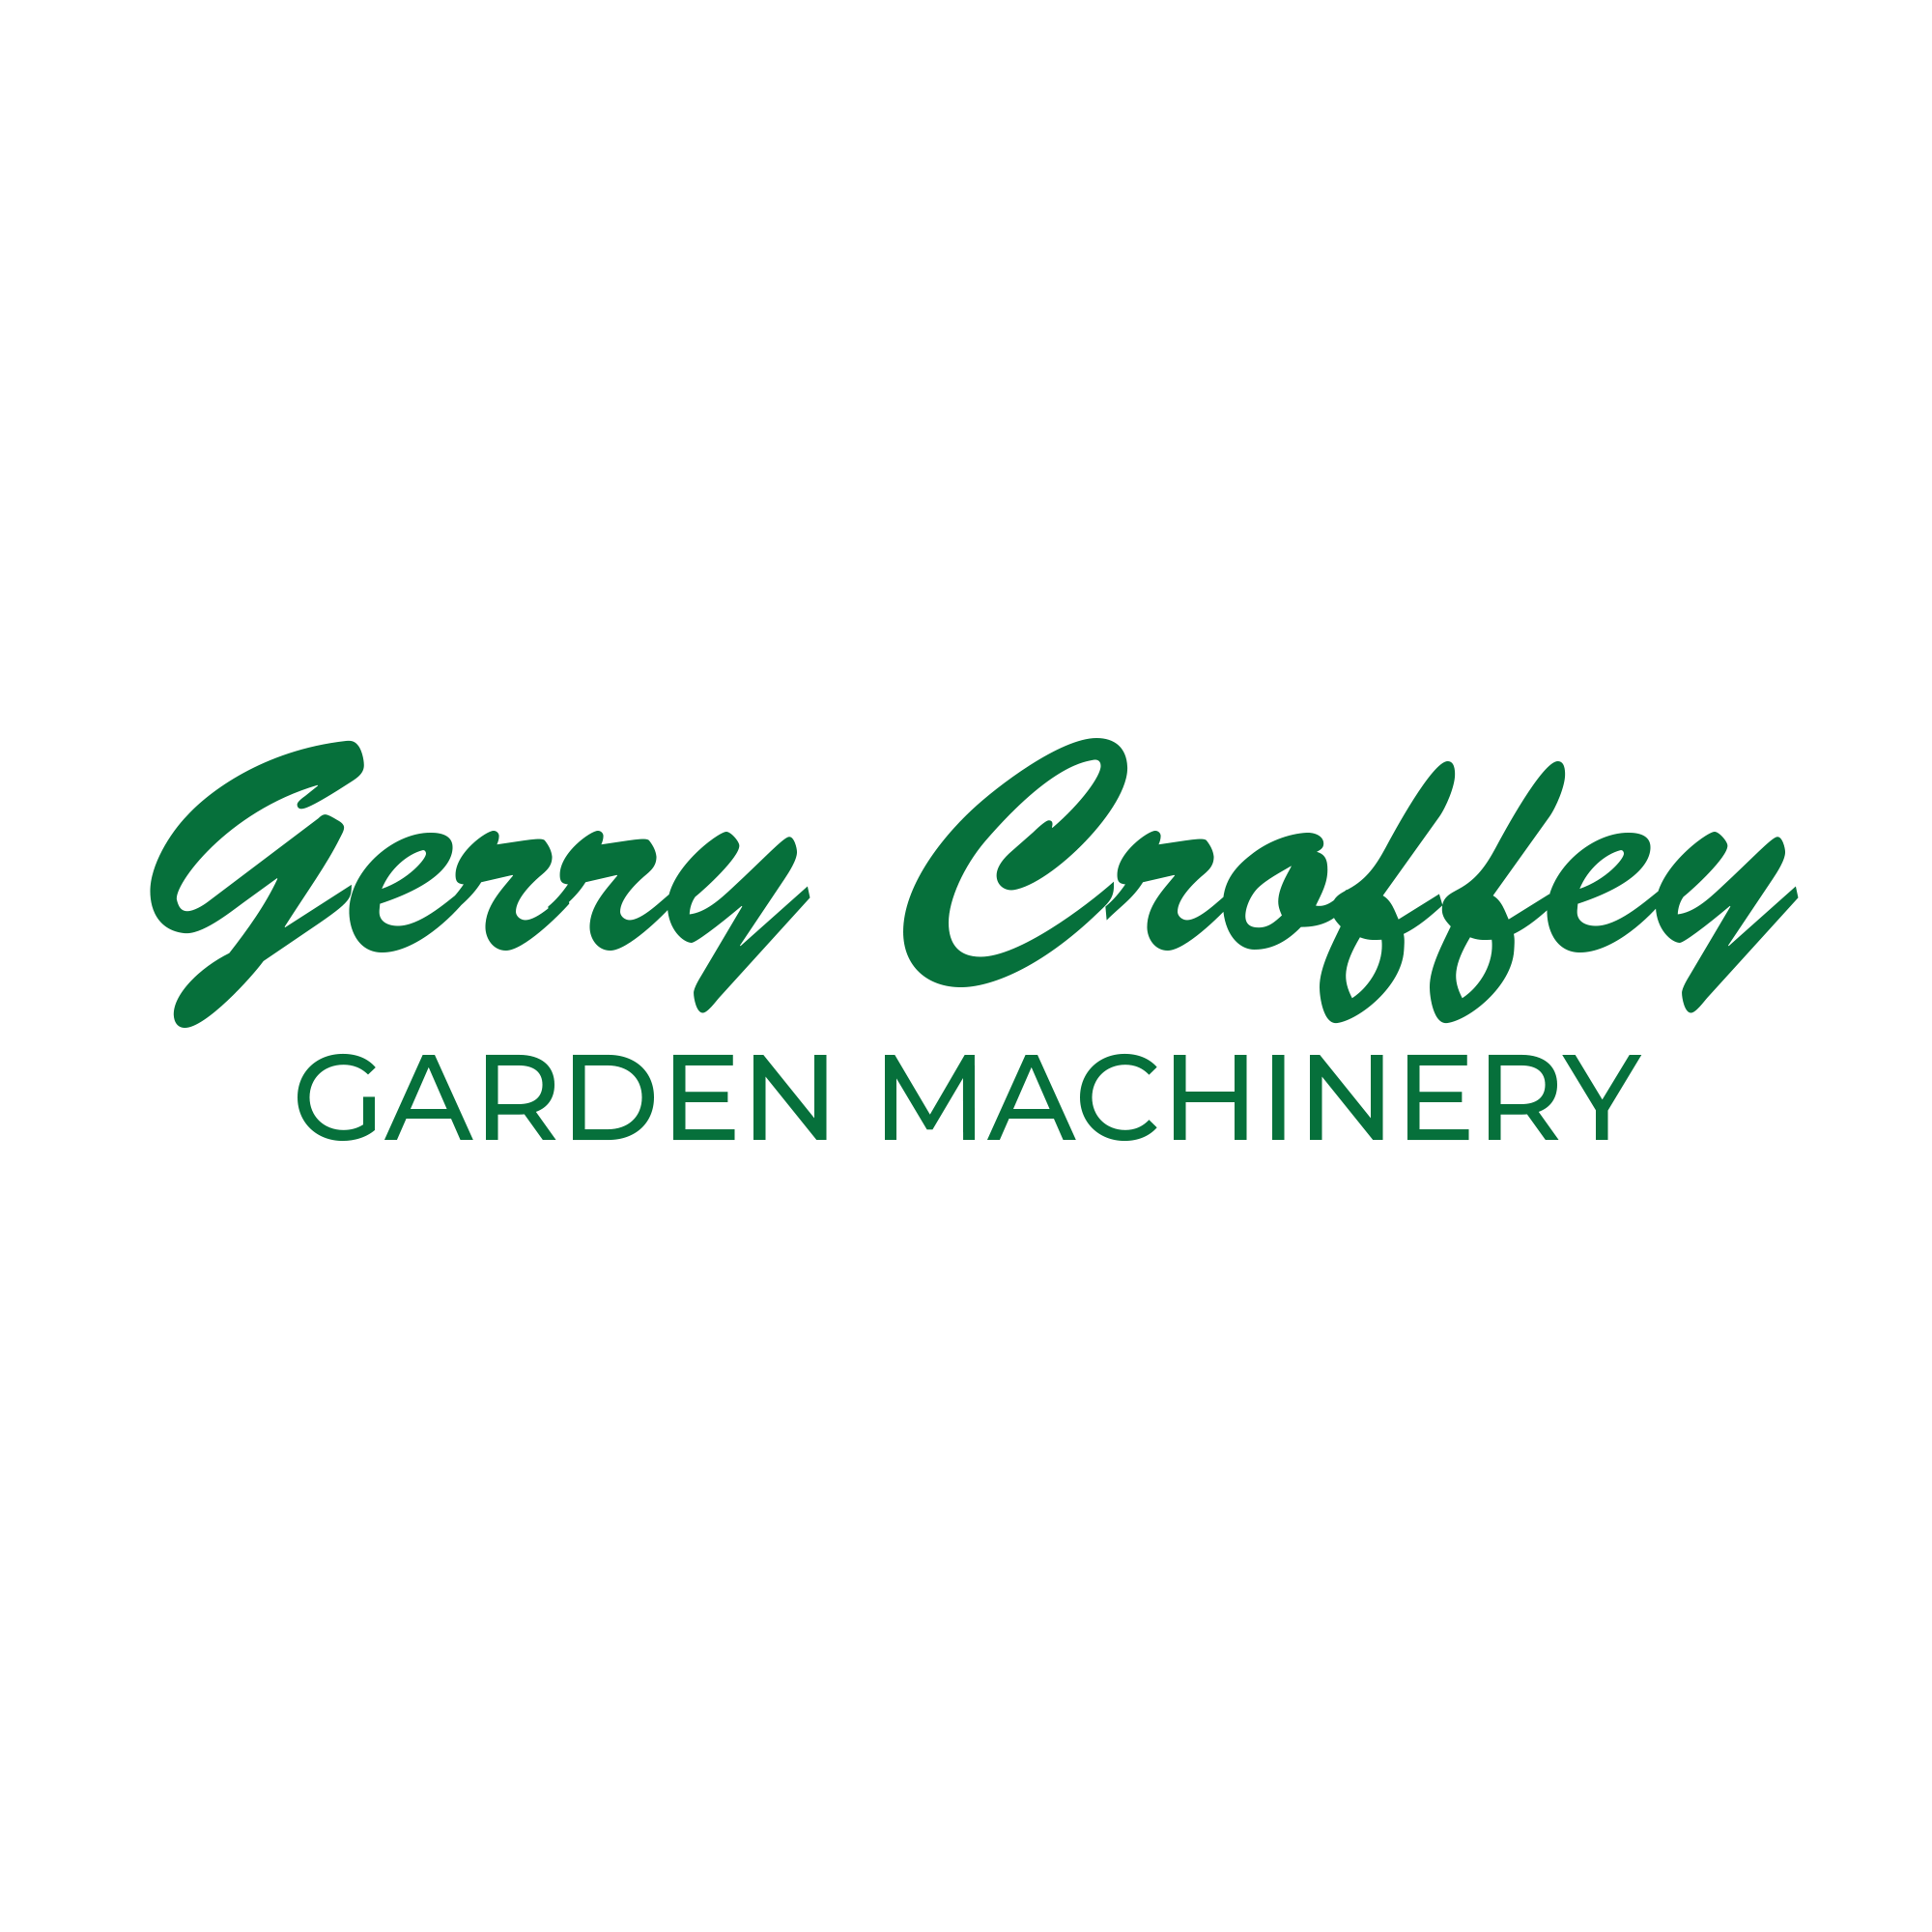 Gerry Croffey Garden Machinery Ltd.